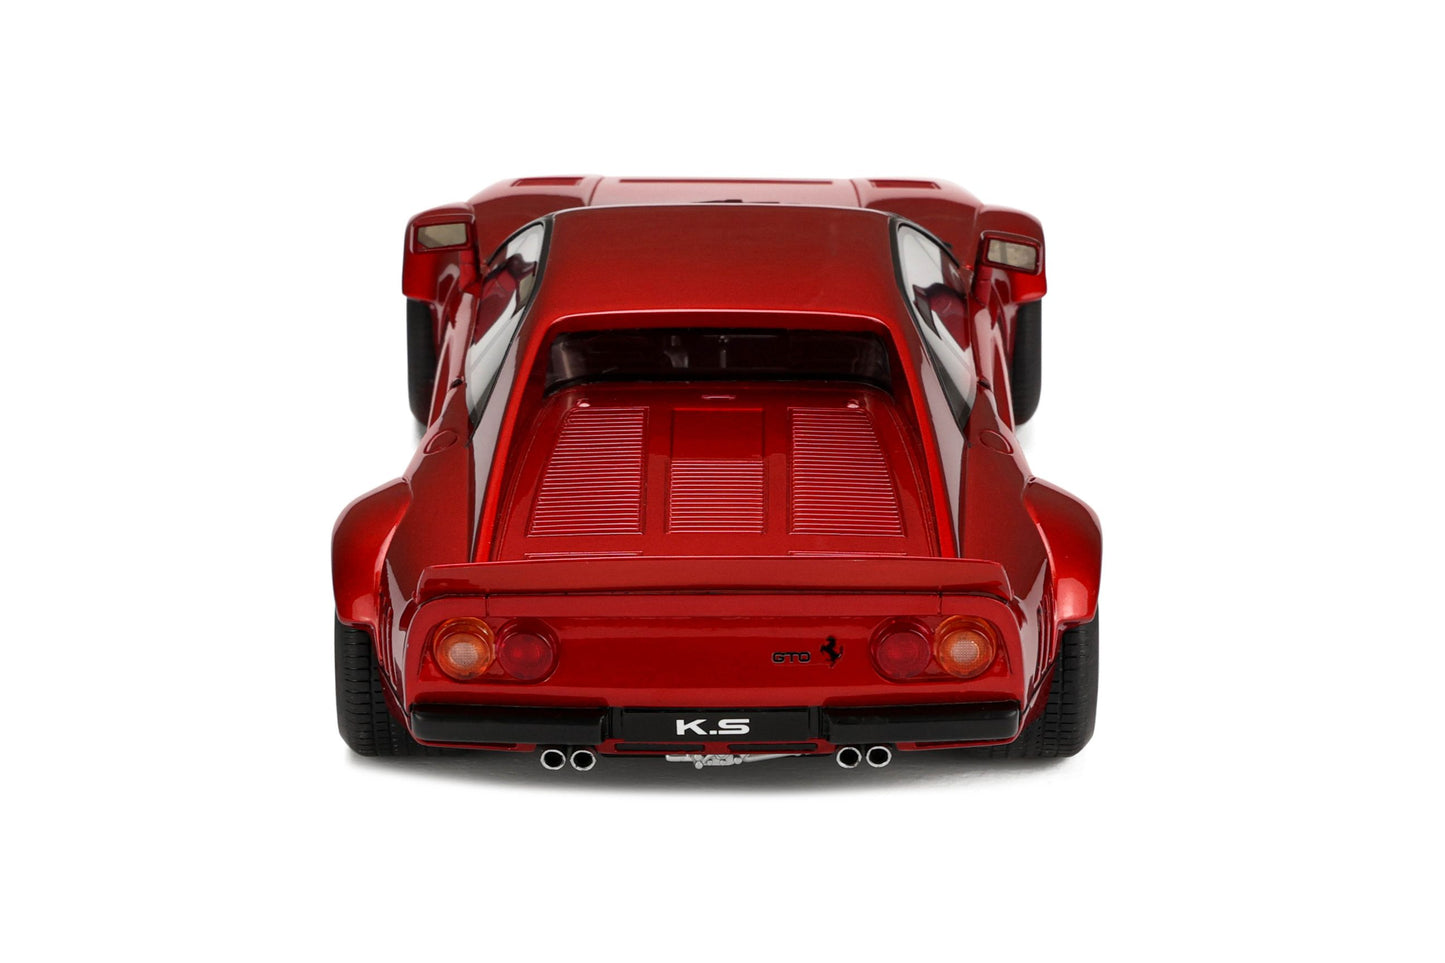 GT Spirit - Khyzyl Saleem Ferrari 288 GTO (Candy Red) 1:18 Scale Model Car